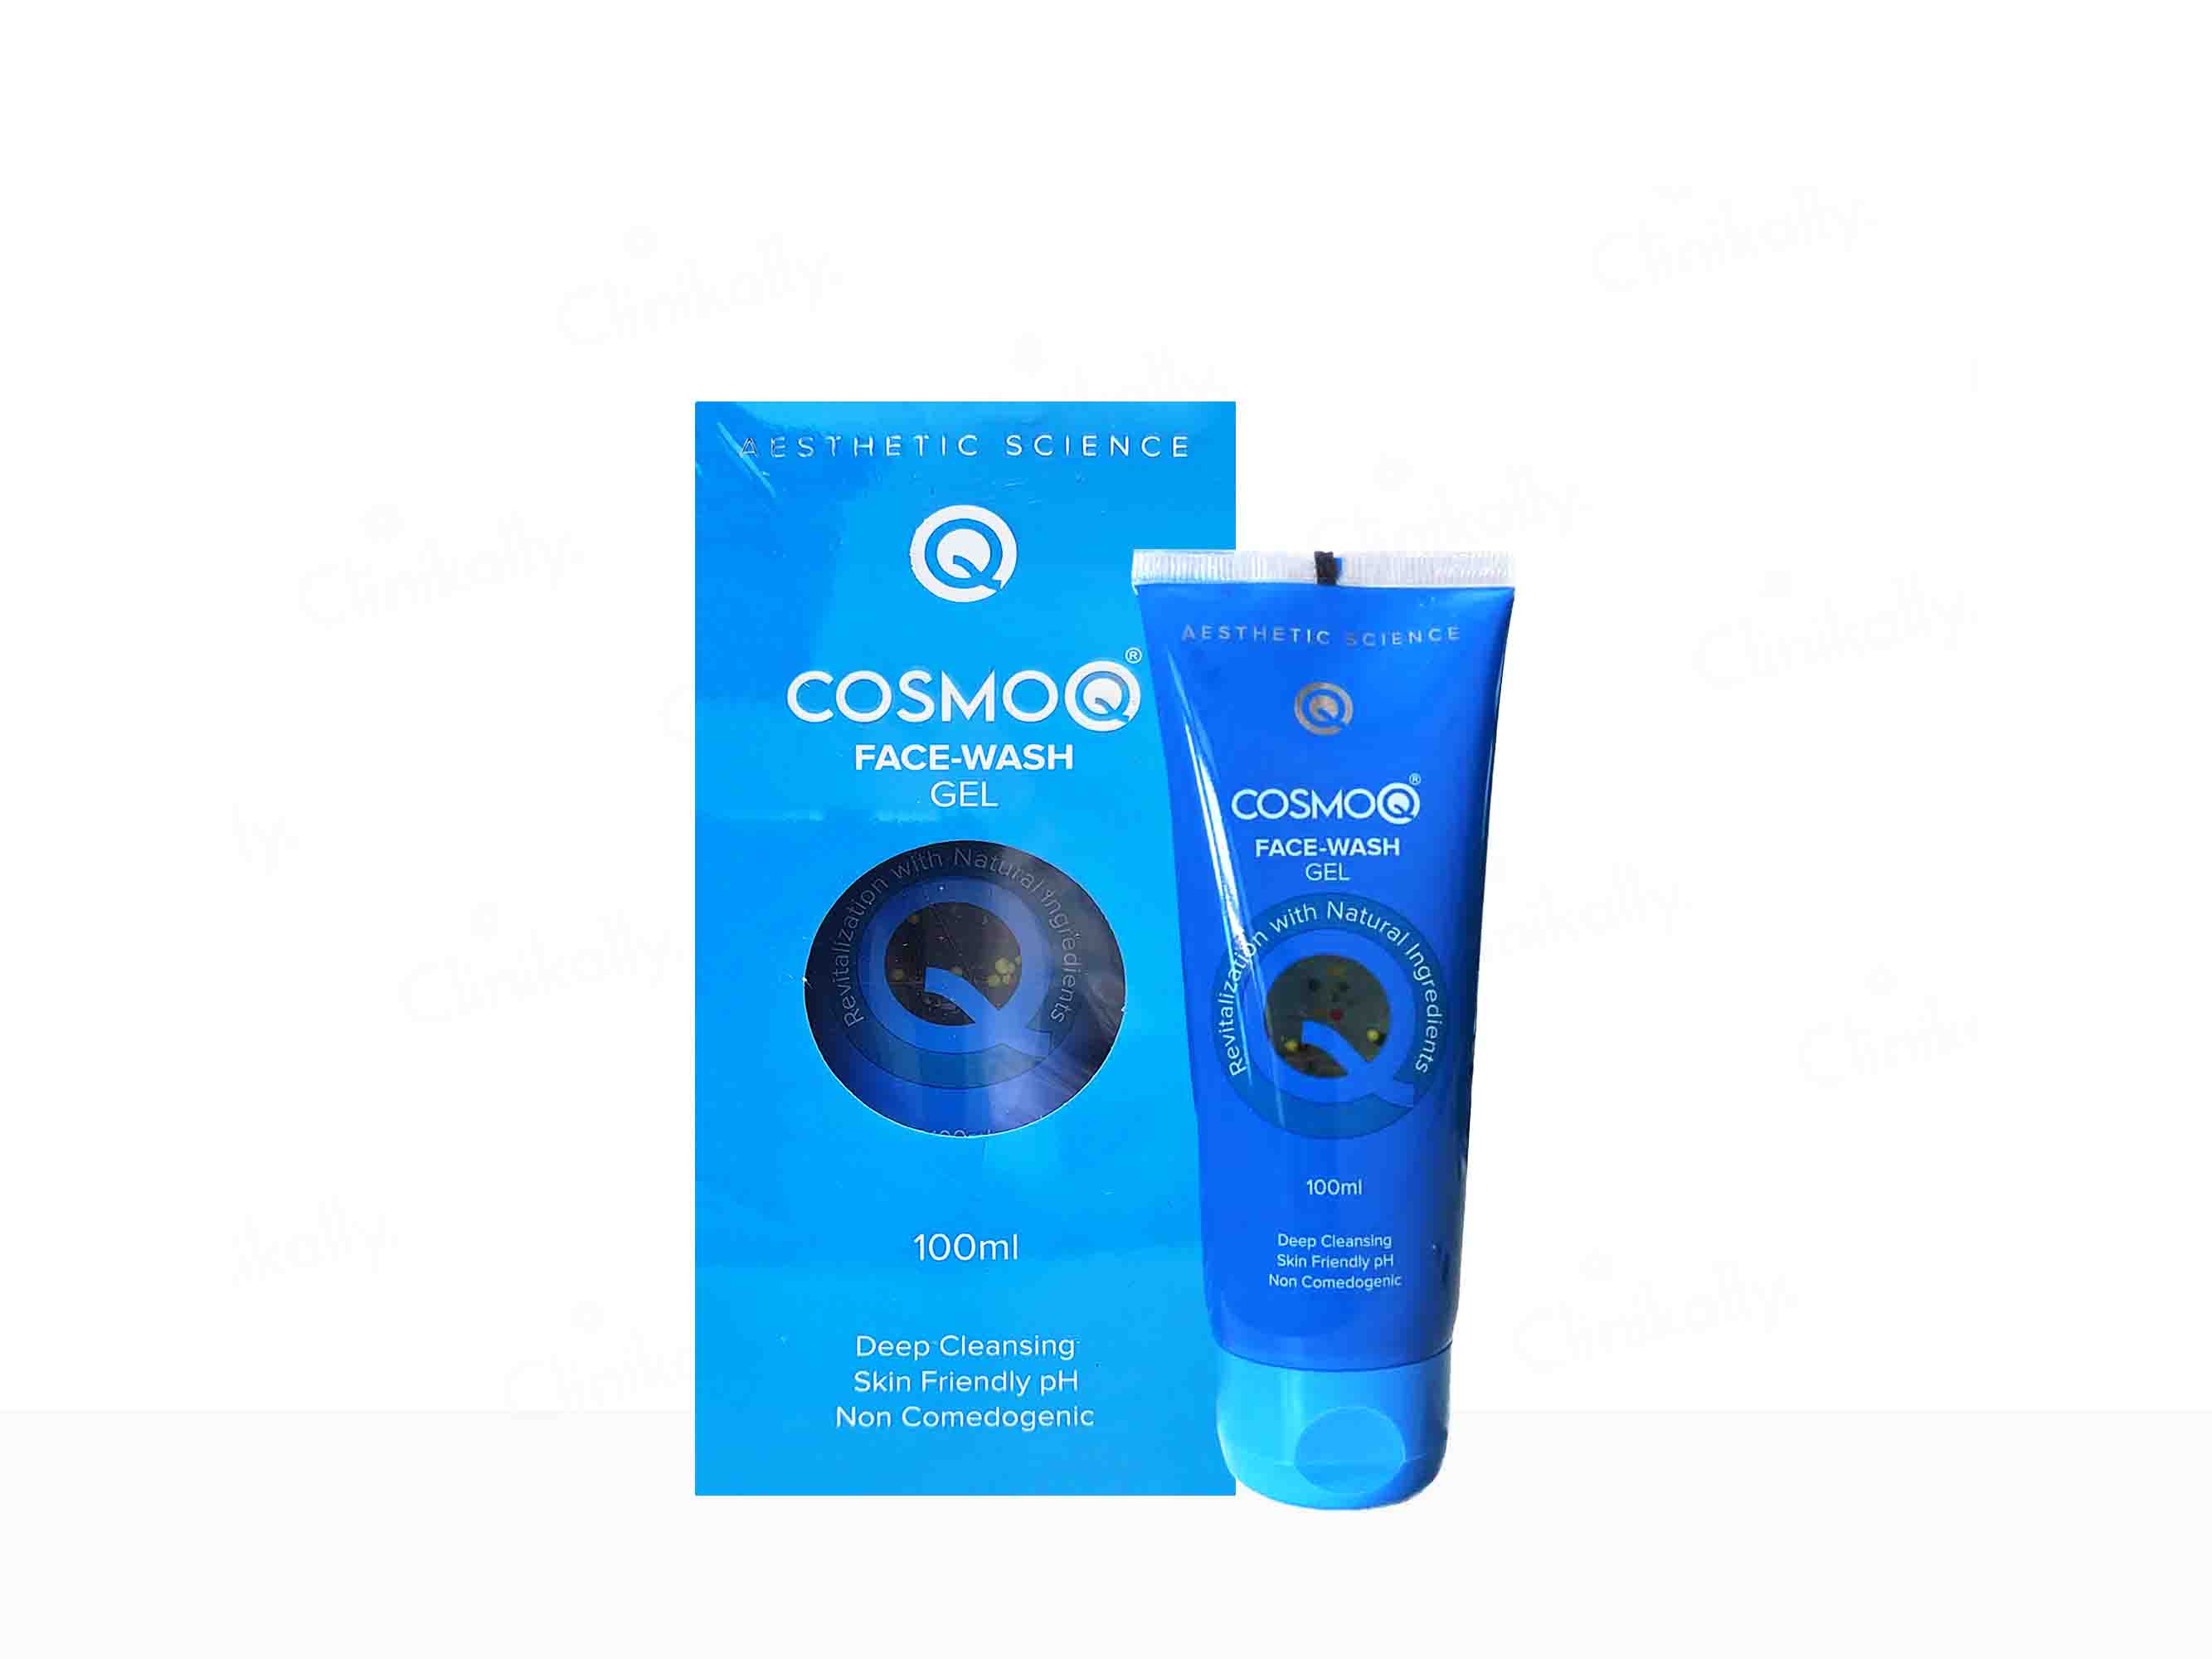 CosmoQ Face-Wash Gel